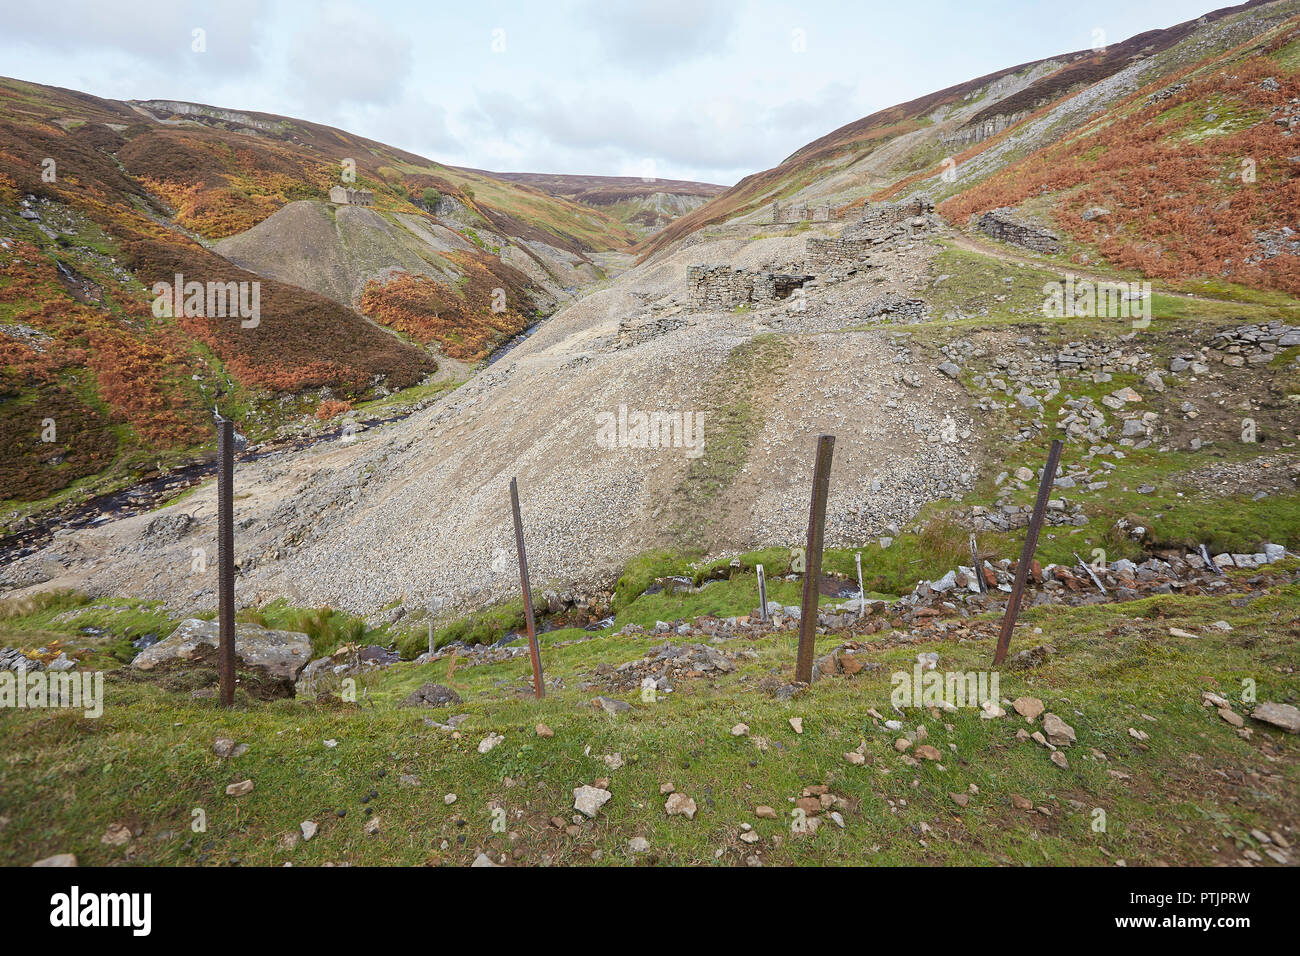 Restos de la otrora floreciente industria minera de plomo, parte de la mina, Bunting superiores de Gunnerside Ghyll Gill, Swaledale, Valles de Yorkshire, Reino Unido Foto de stock